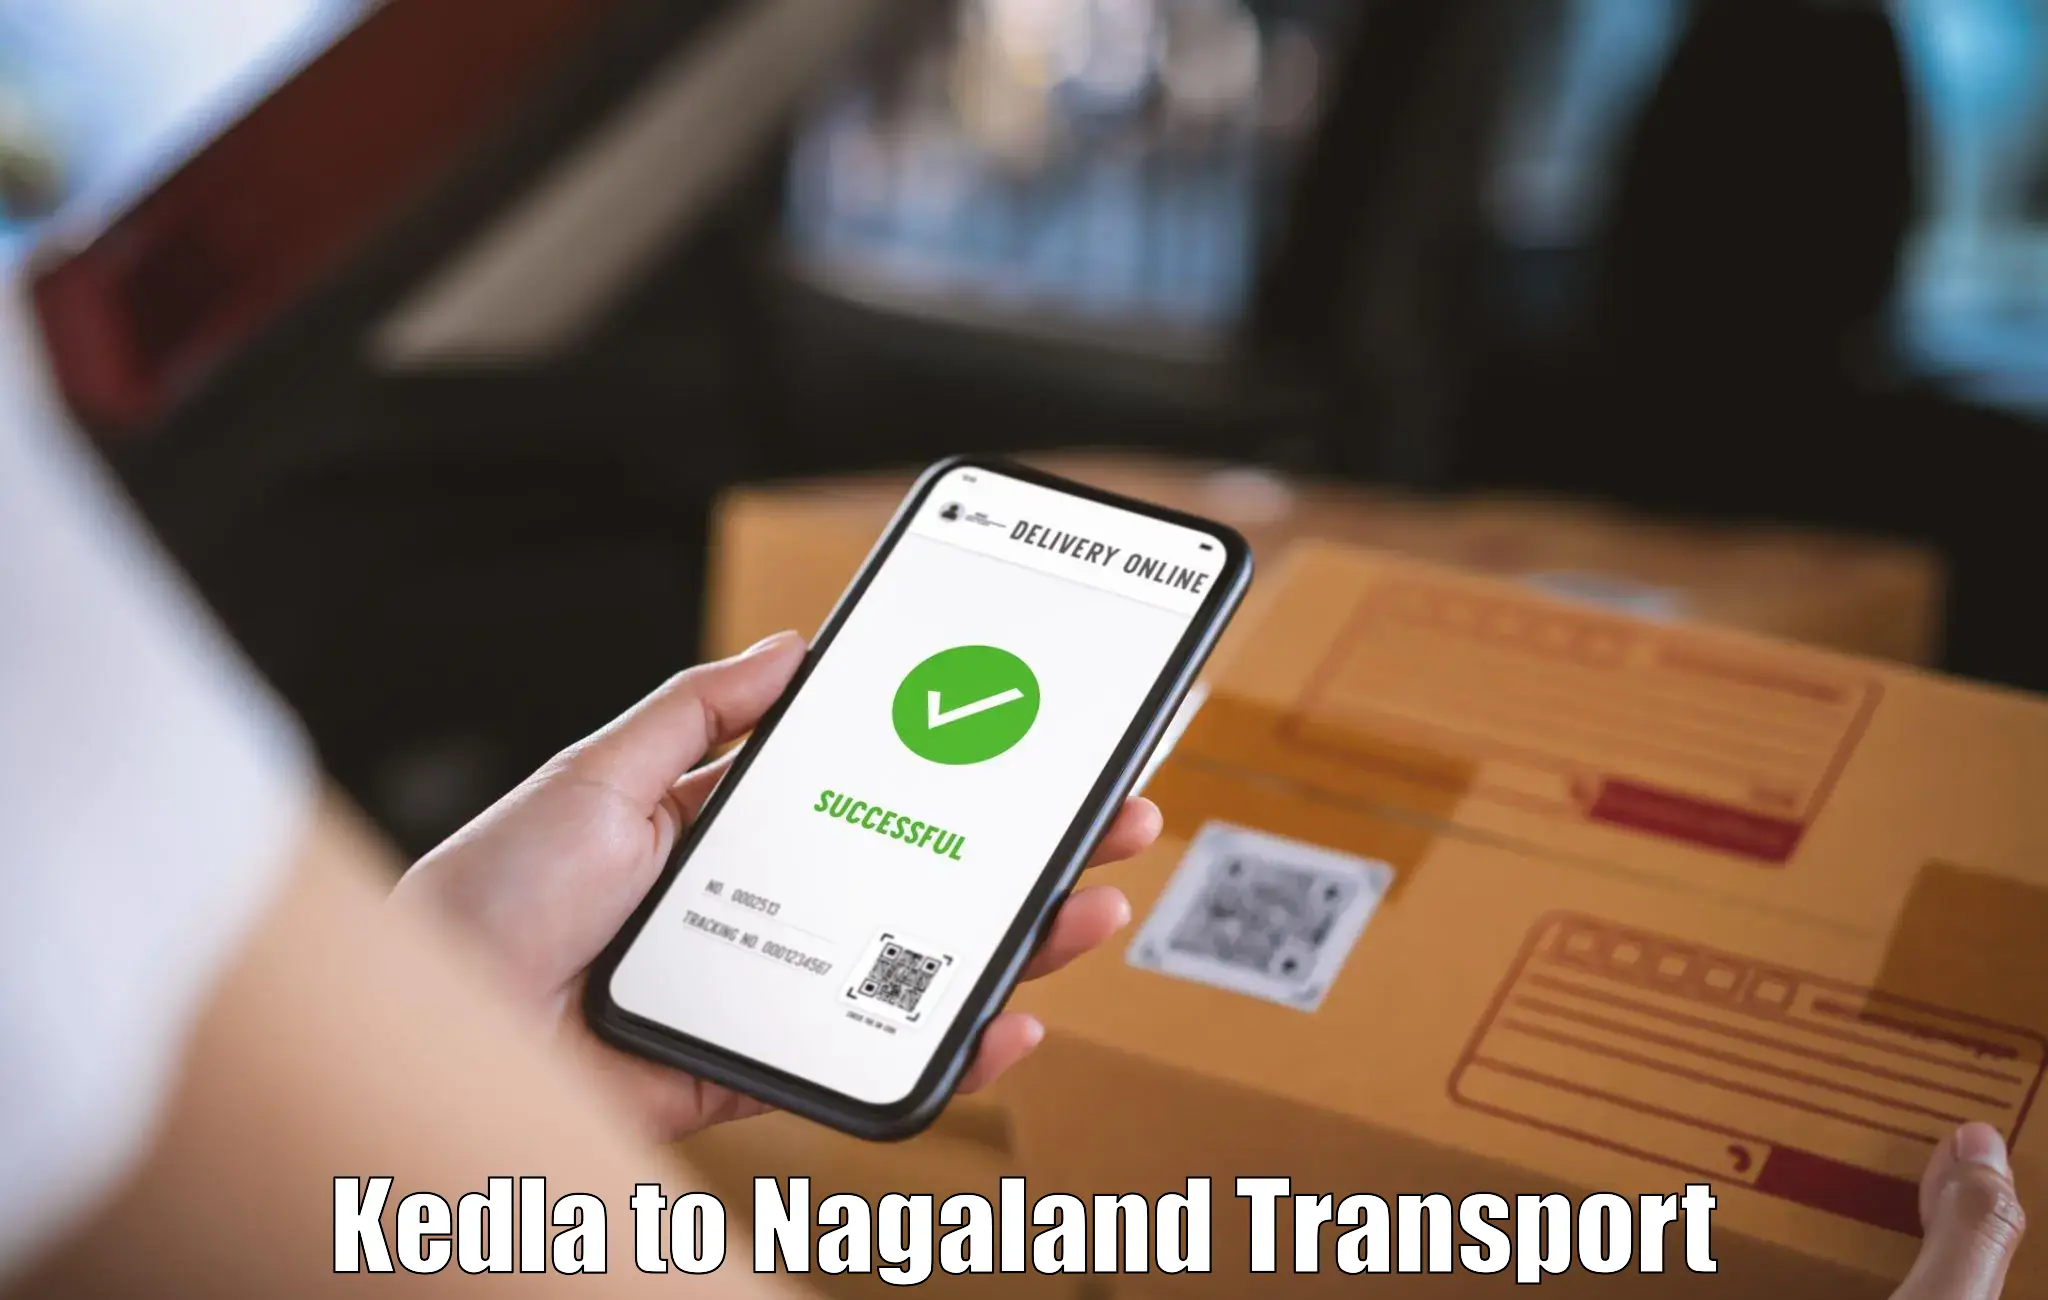 Pick up transport service Kedla to Mokokchung